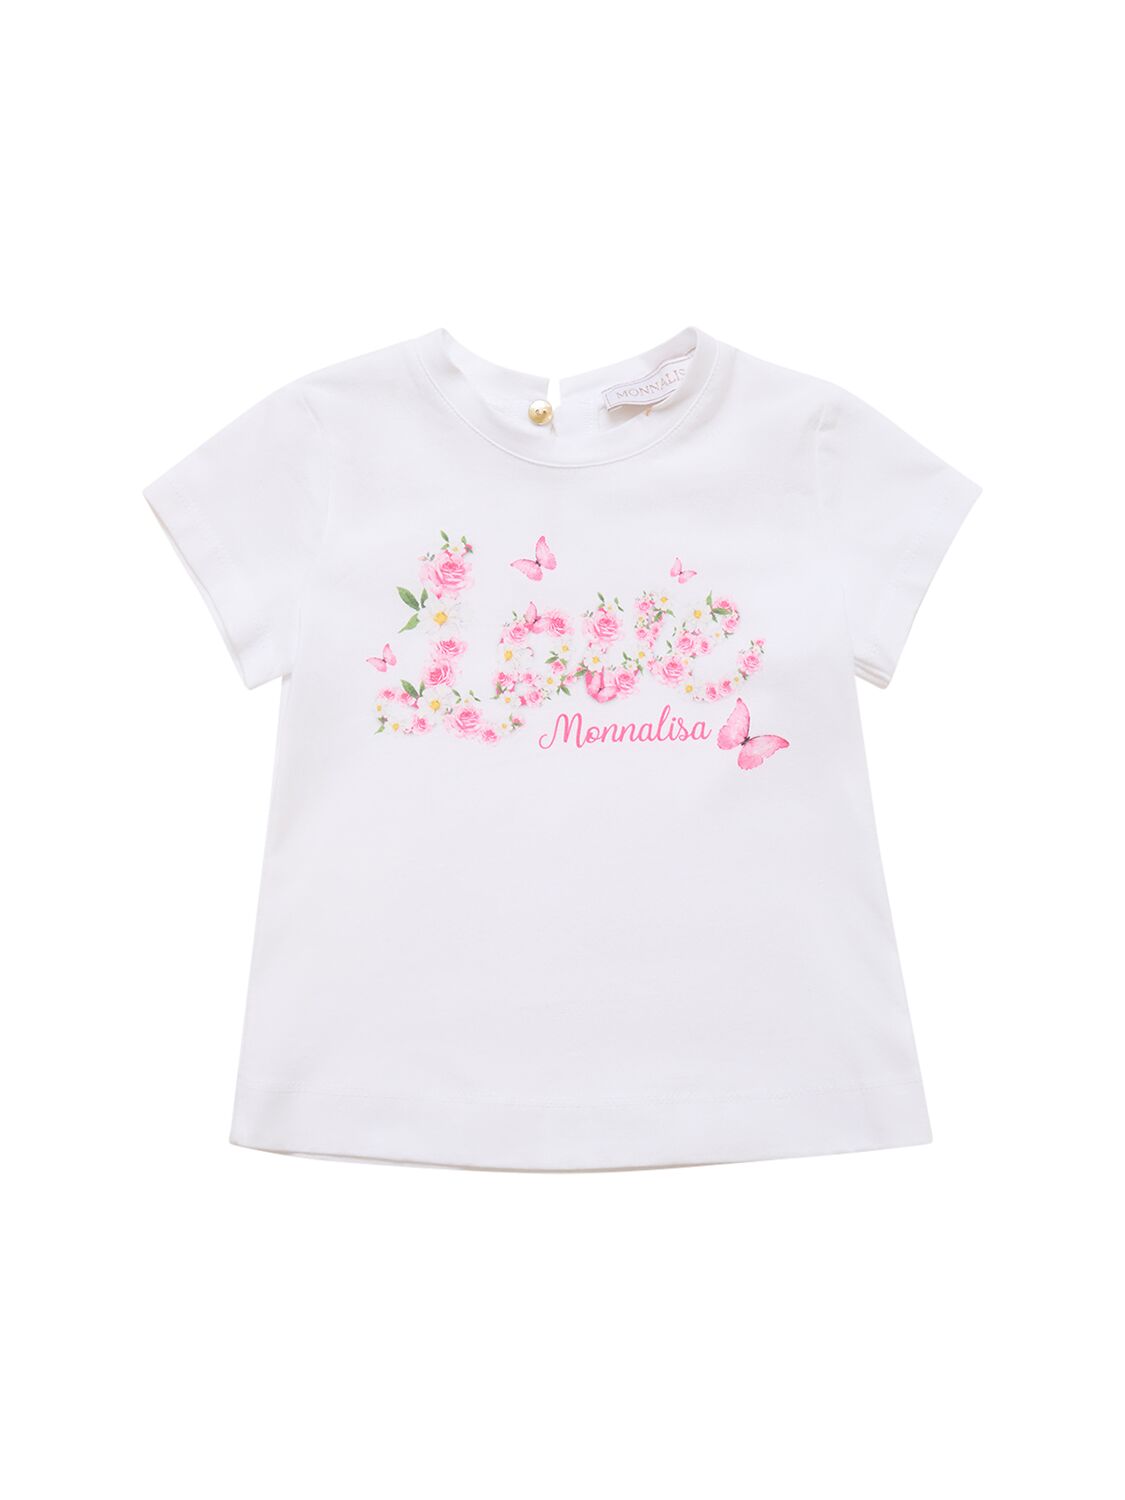 Monnalisa Kids' Printed Cotton Jersey T-shirt In White